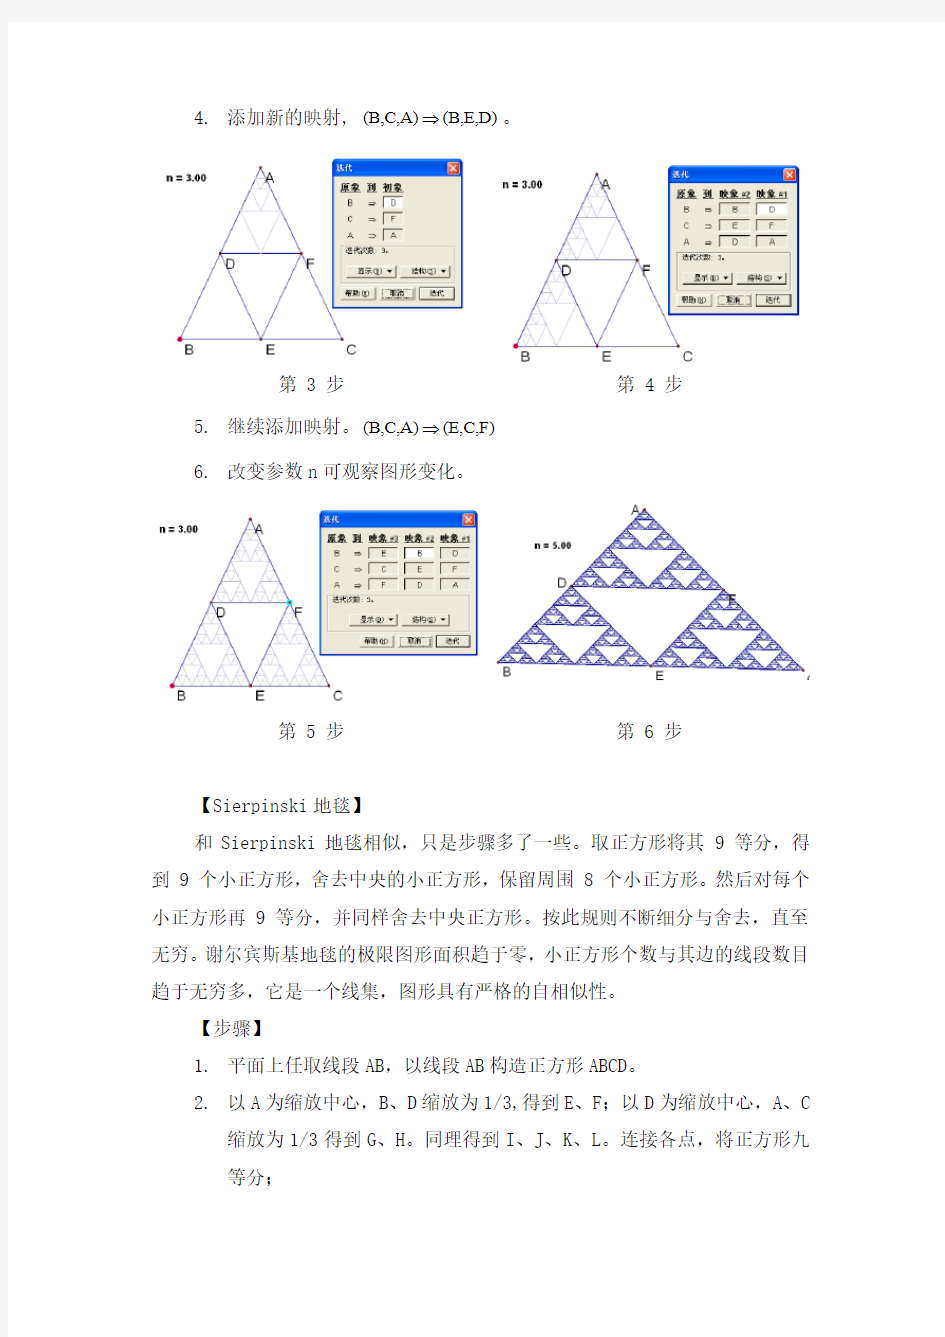 几何画板迭代详解之迭代与分形几何